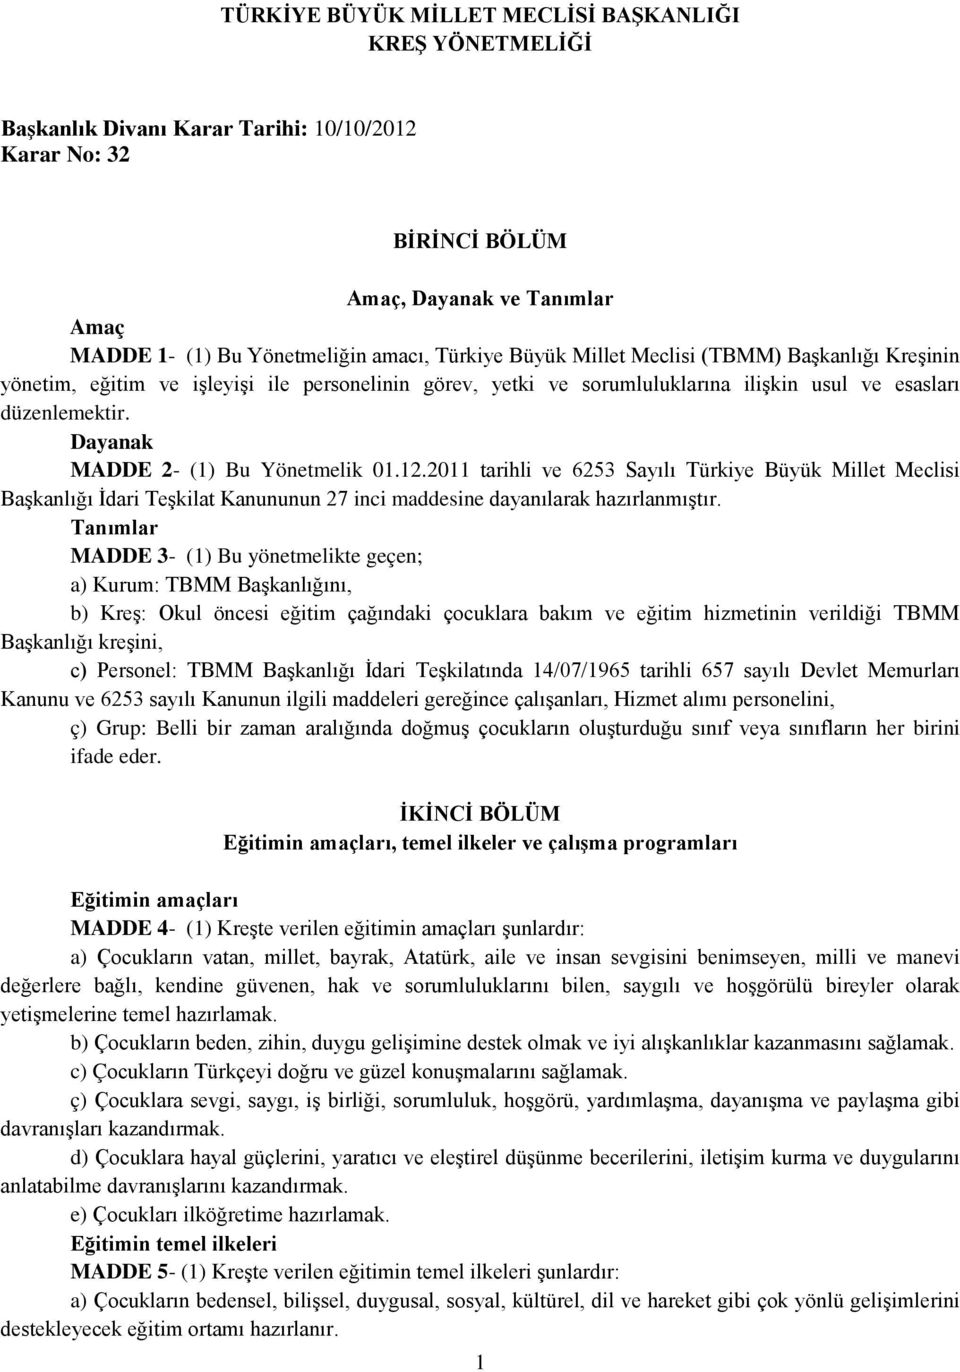 Dayanak MADDE 2- (1) Bu Yönetmelik 01.12.2011 tarihli ve 6253 Sayılı Türkiye Büyük Millet Meclisi Başkanlığı İdari Teşkilat Kanununun 27 inci maddesine dayanılarak hazırlanmıştır.